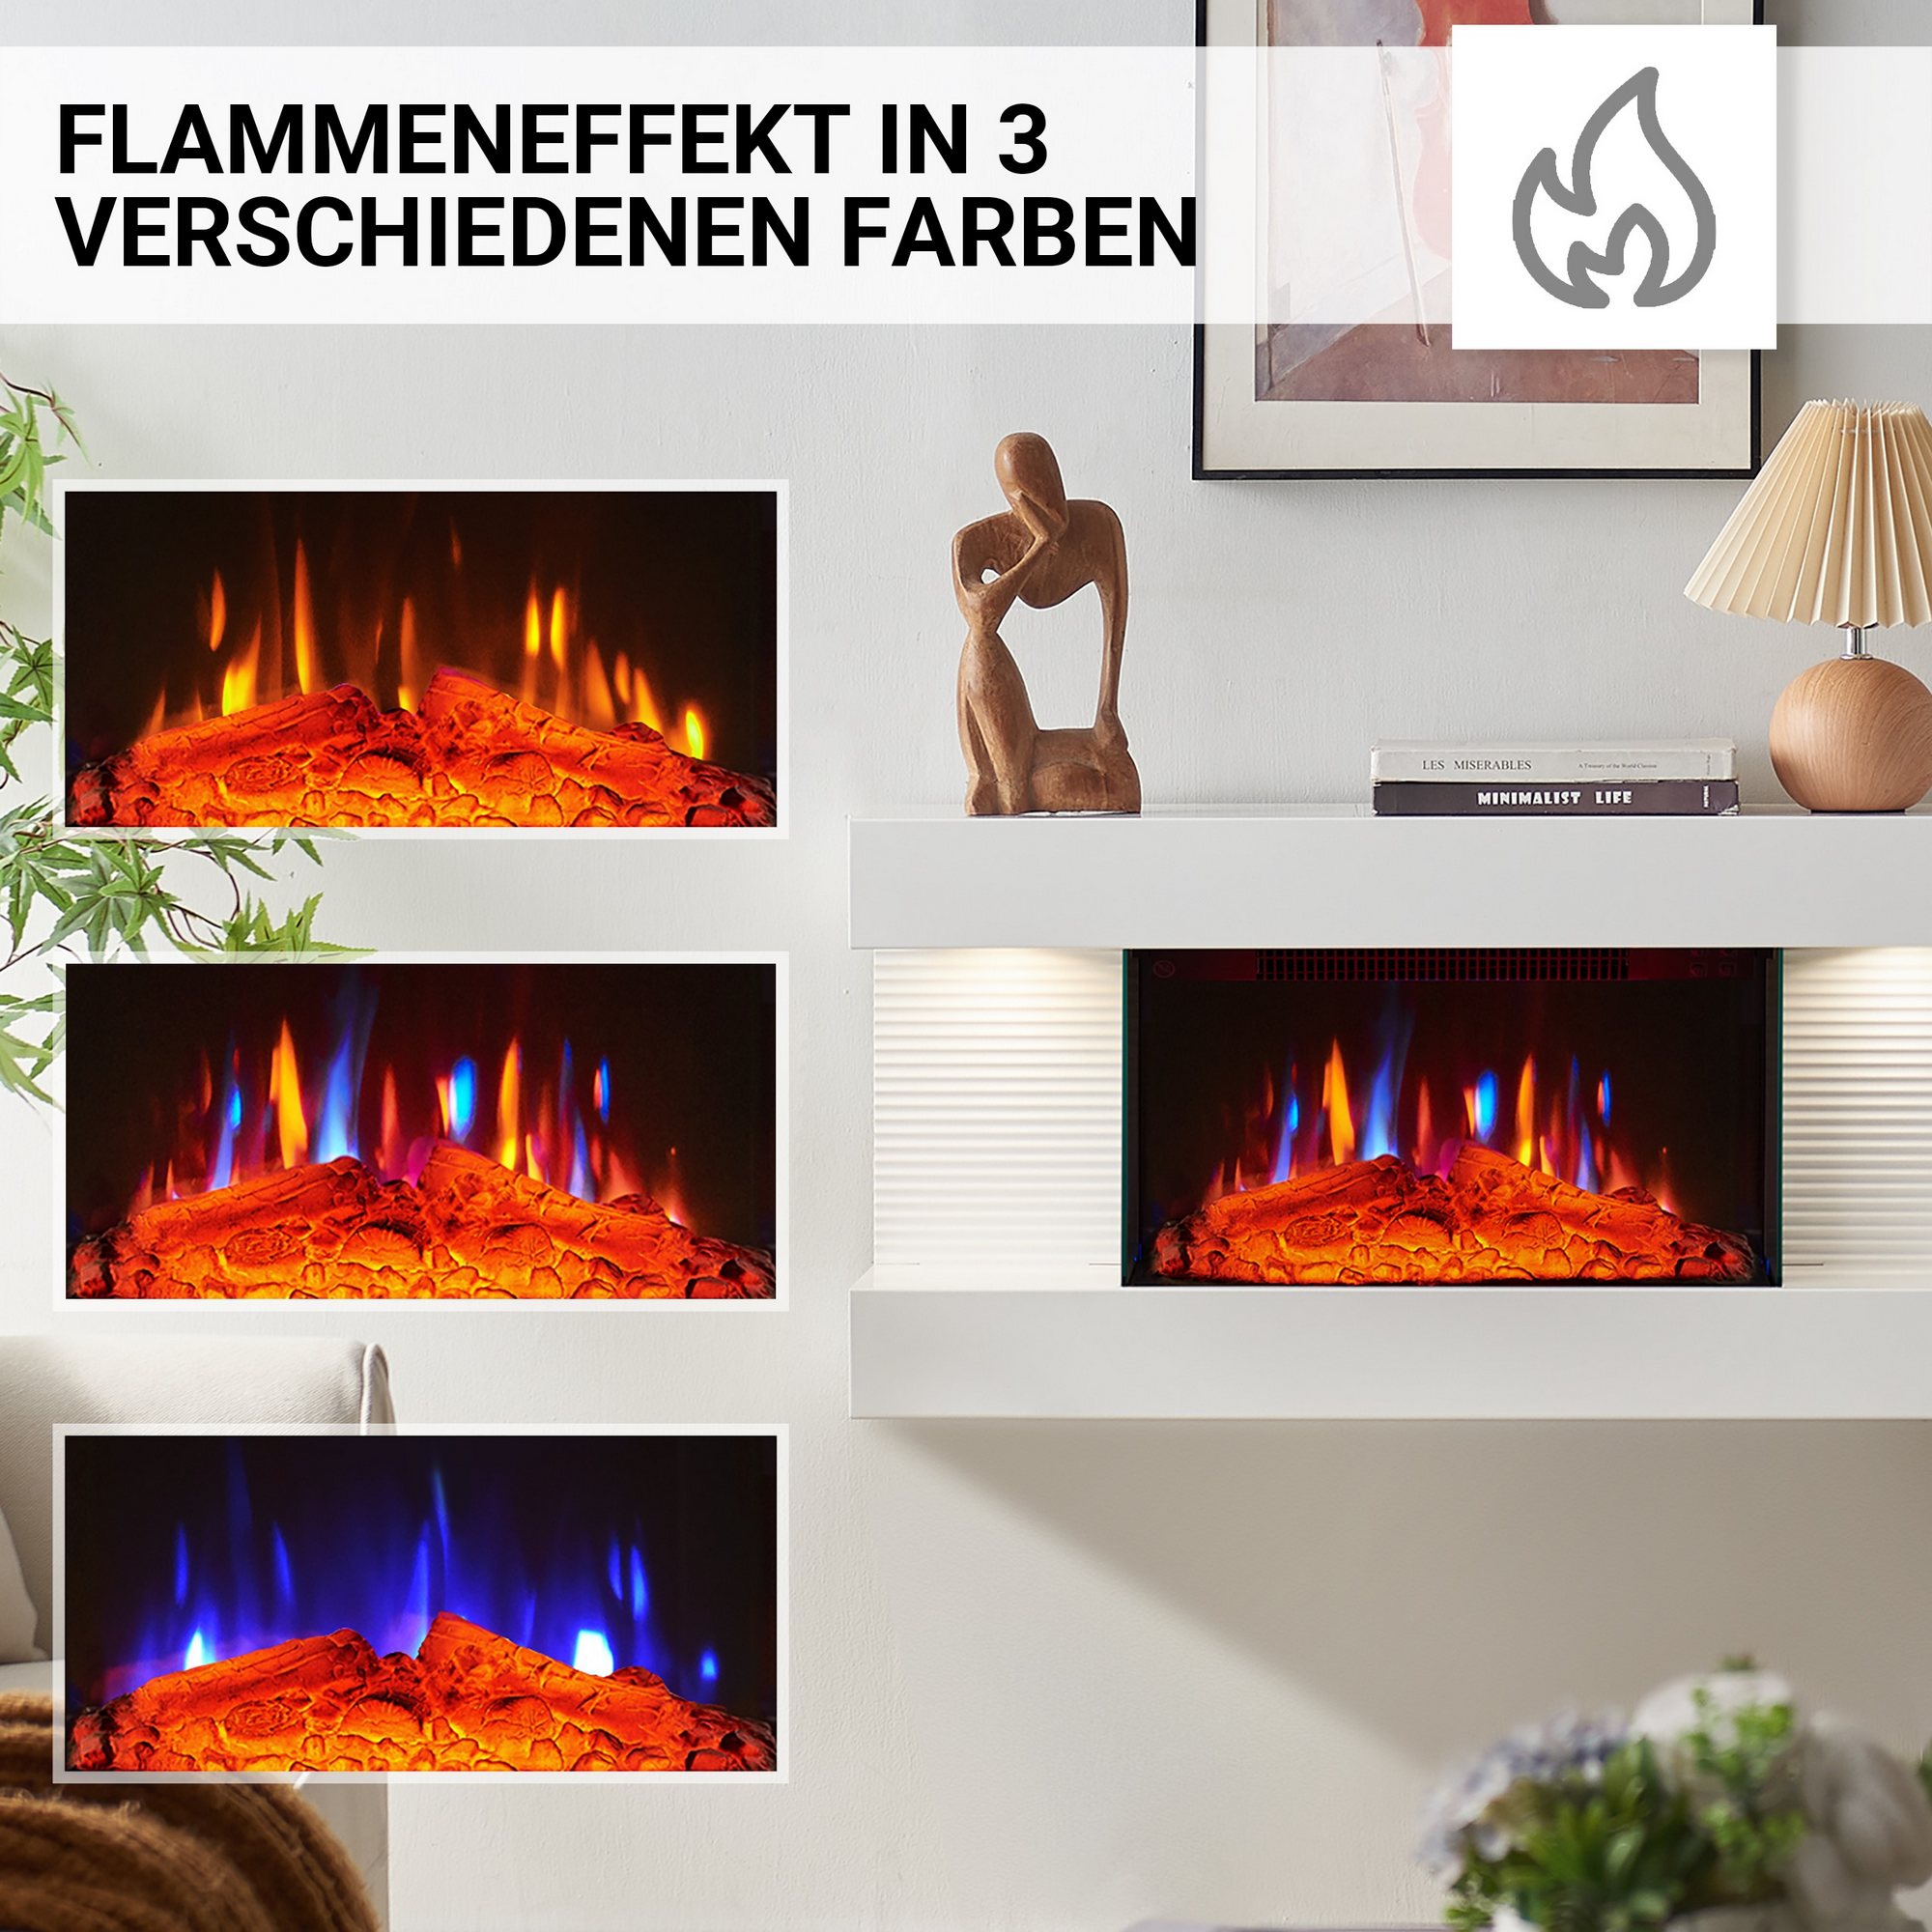 Elektro-Wandkamin 'Ida' weiß 1800 W, 3D-Flammeneffekt Fernbedienung 82 x 41,8 x 21,6 cm + product picture